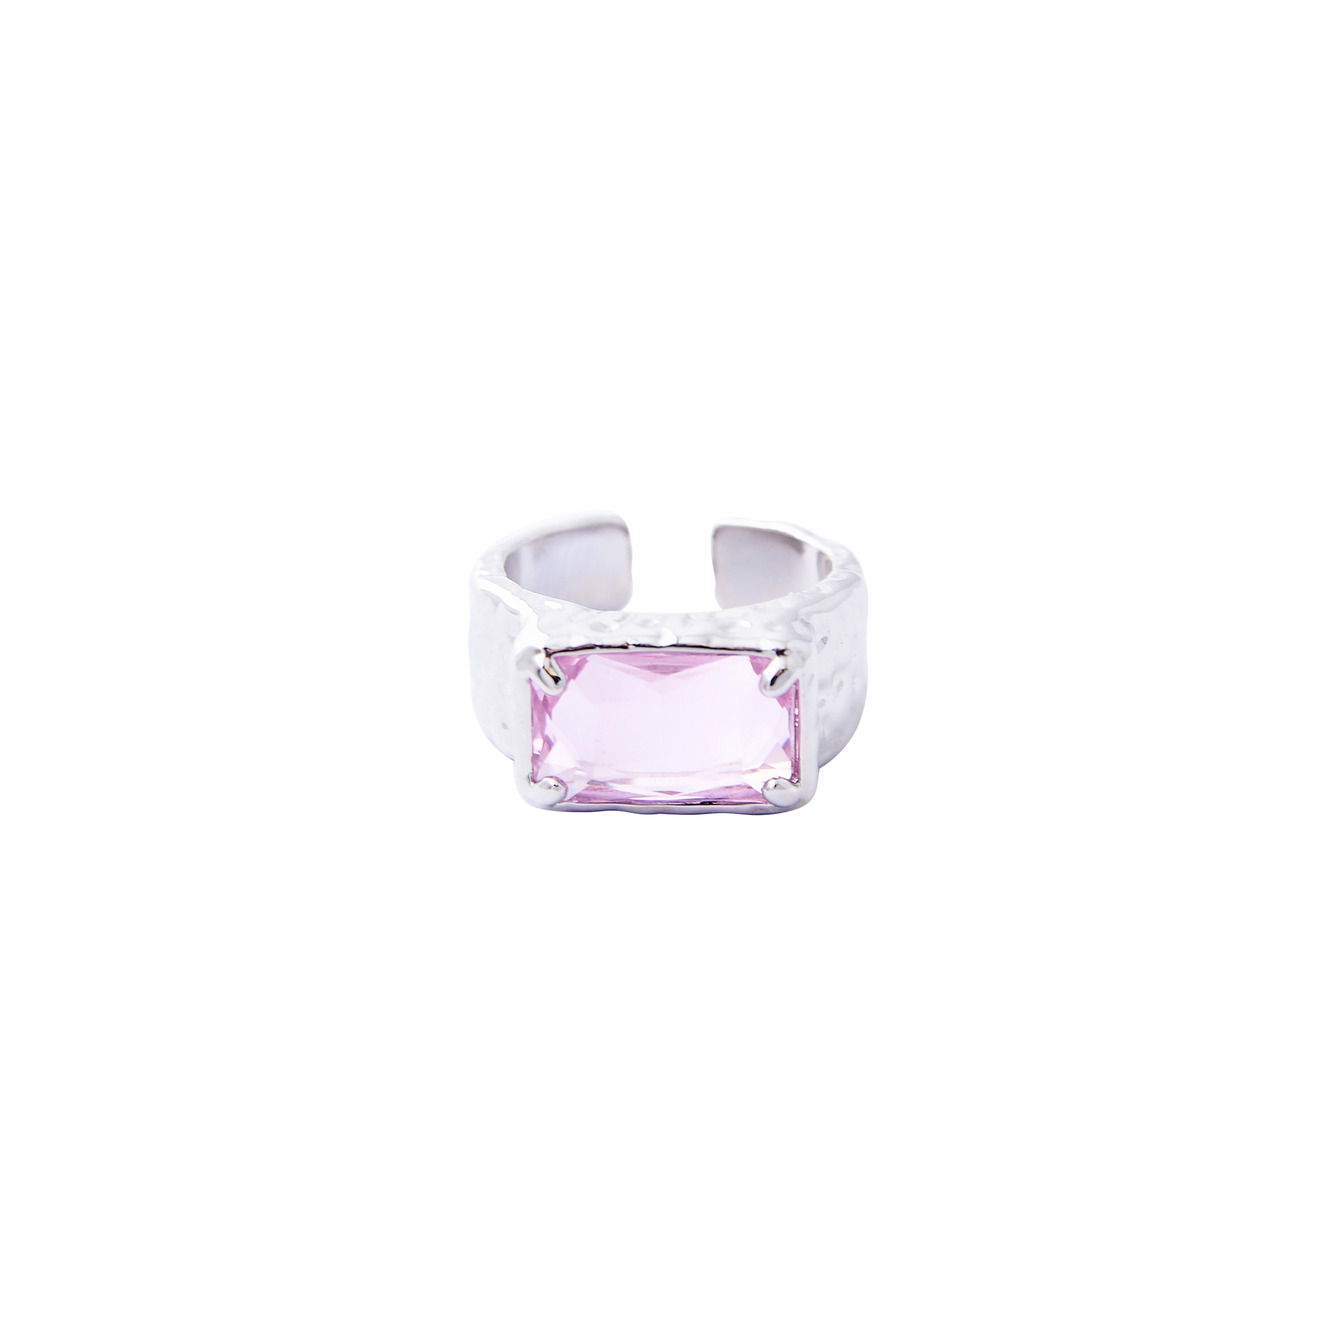 Herald Percy Серебристое кольцо с крупным розовым кристаллом lisa smith золотистое кольцо с розовым кристаллом